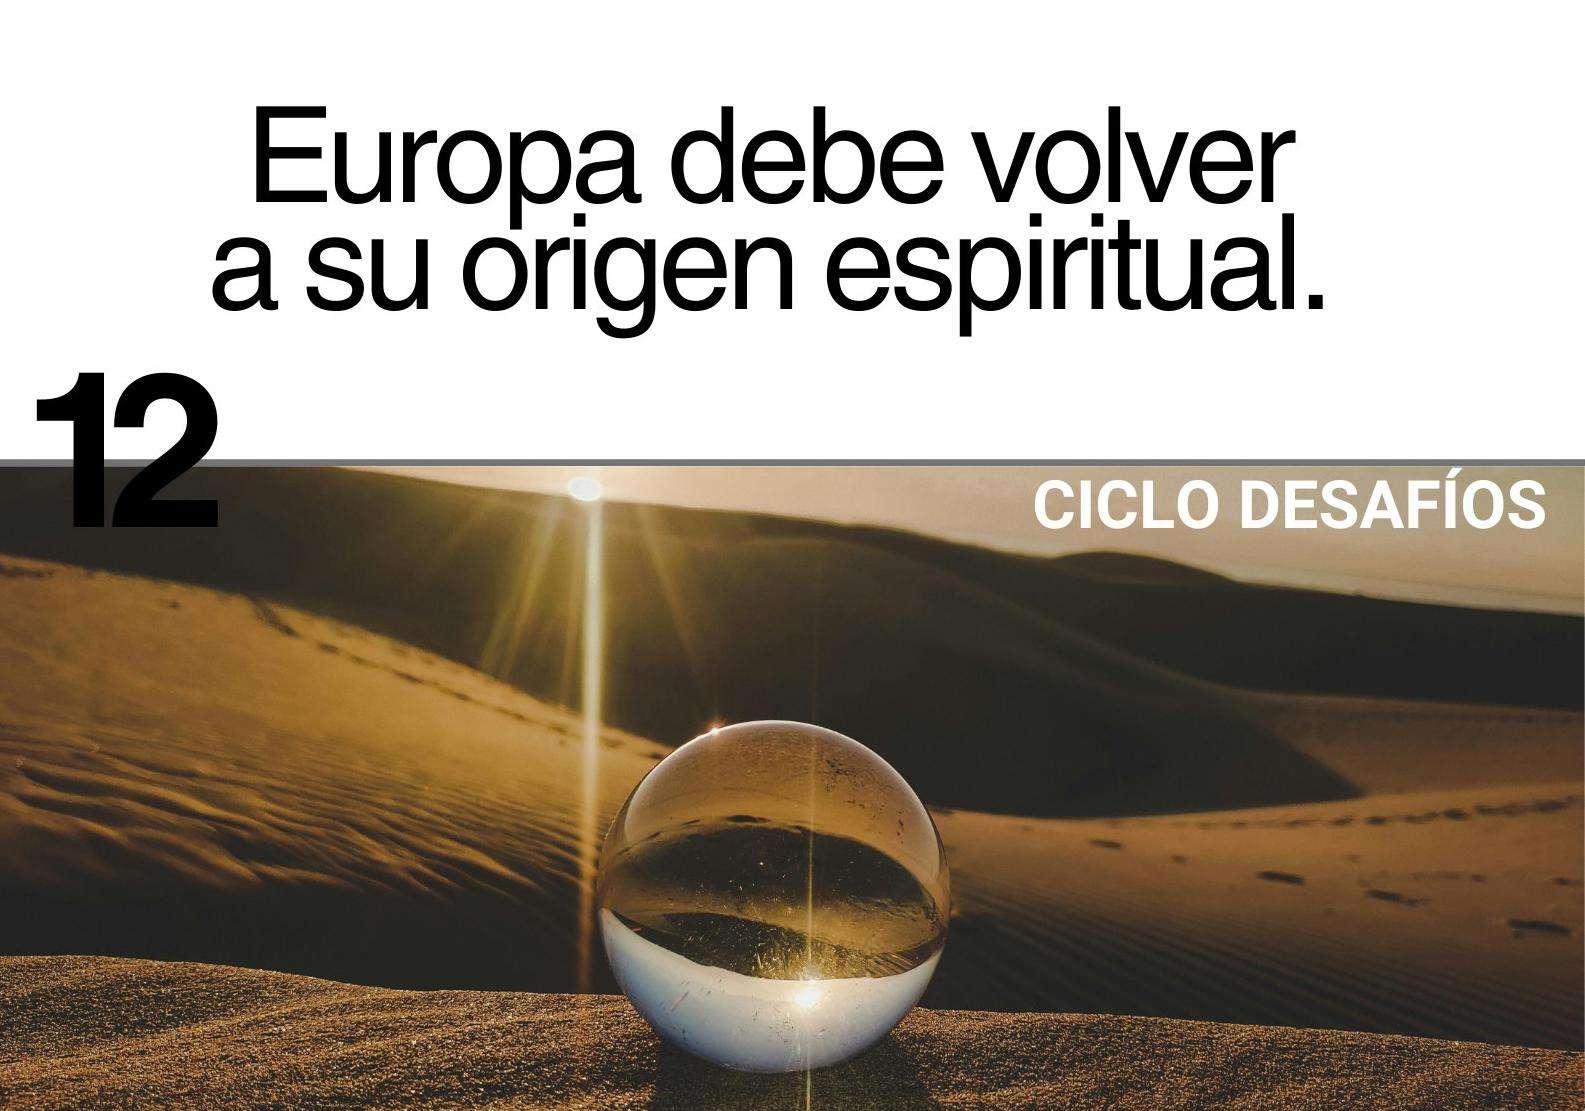 Charla Coloquio: Desafíos 12 Europa debe volver a su origen espiritual